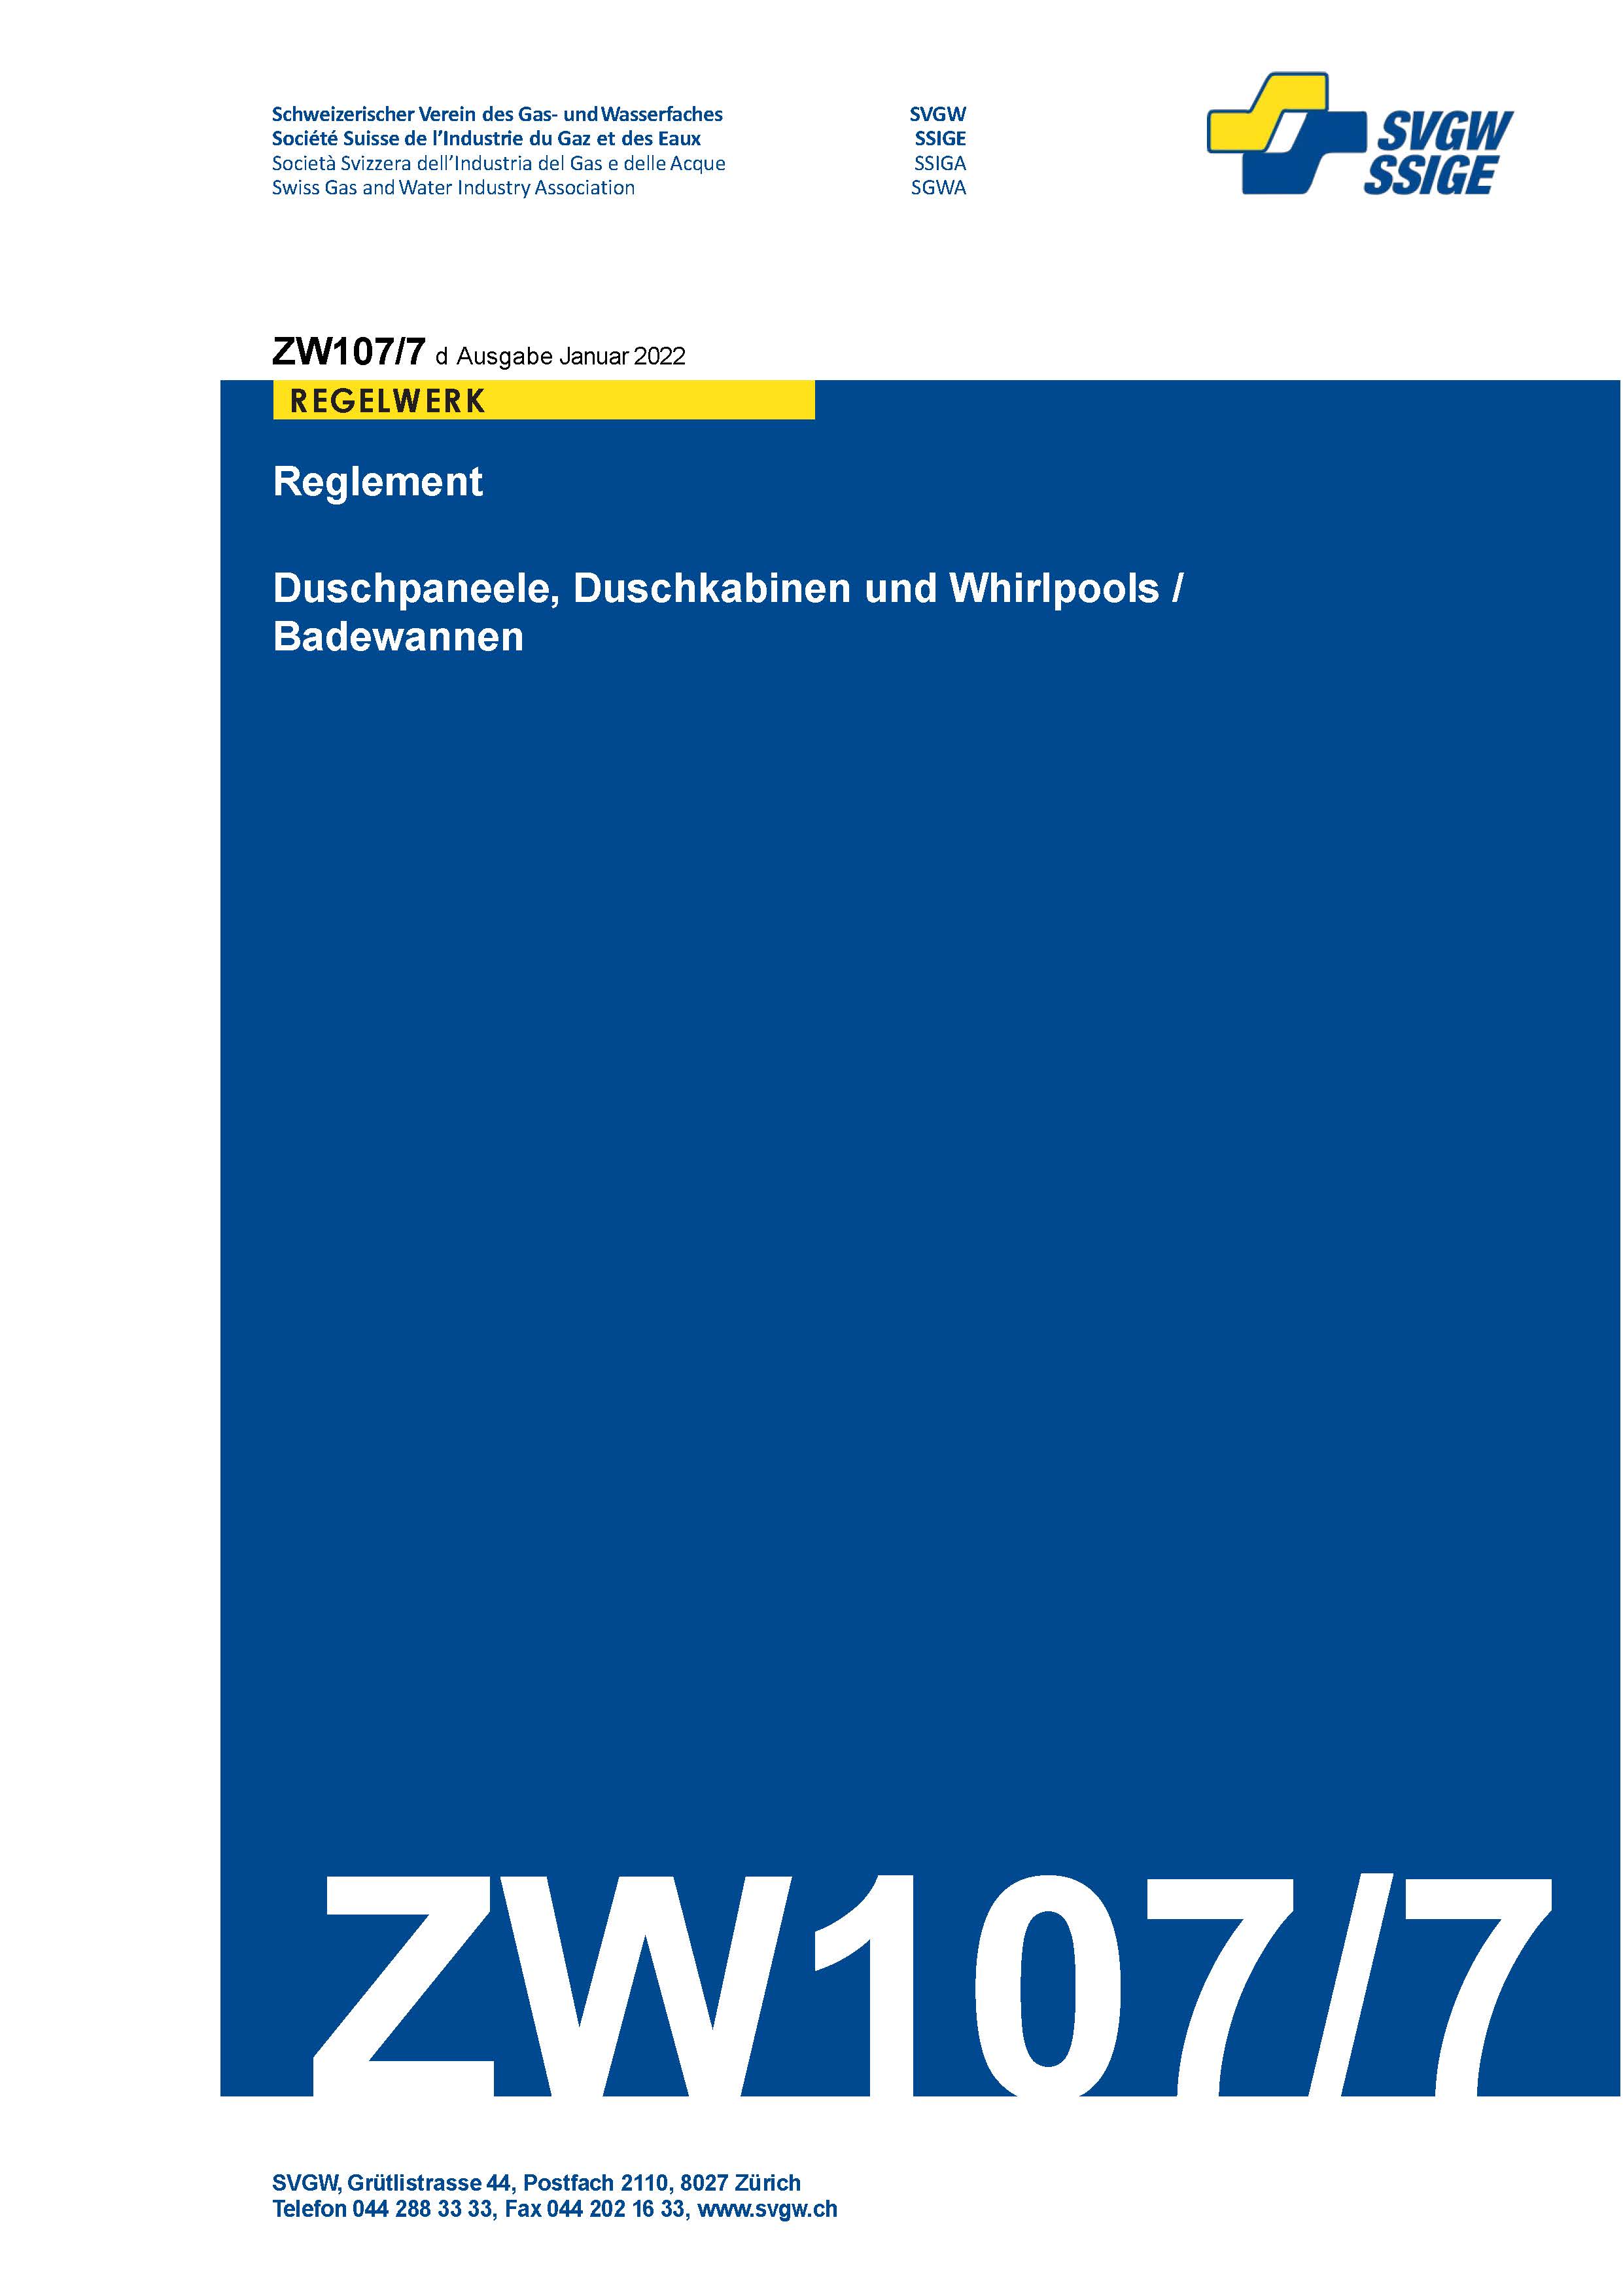 ZW107/7 d - Reglement; Duschpaneelen, Duschkabinen und Whirlpools/Badewannen